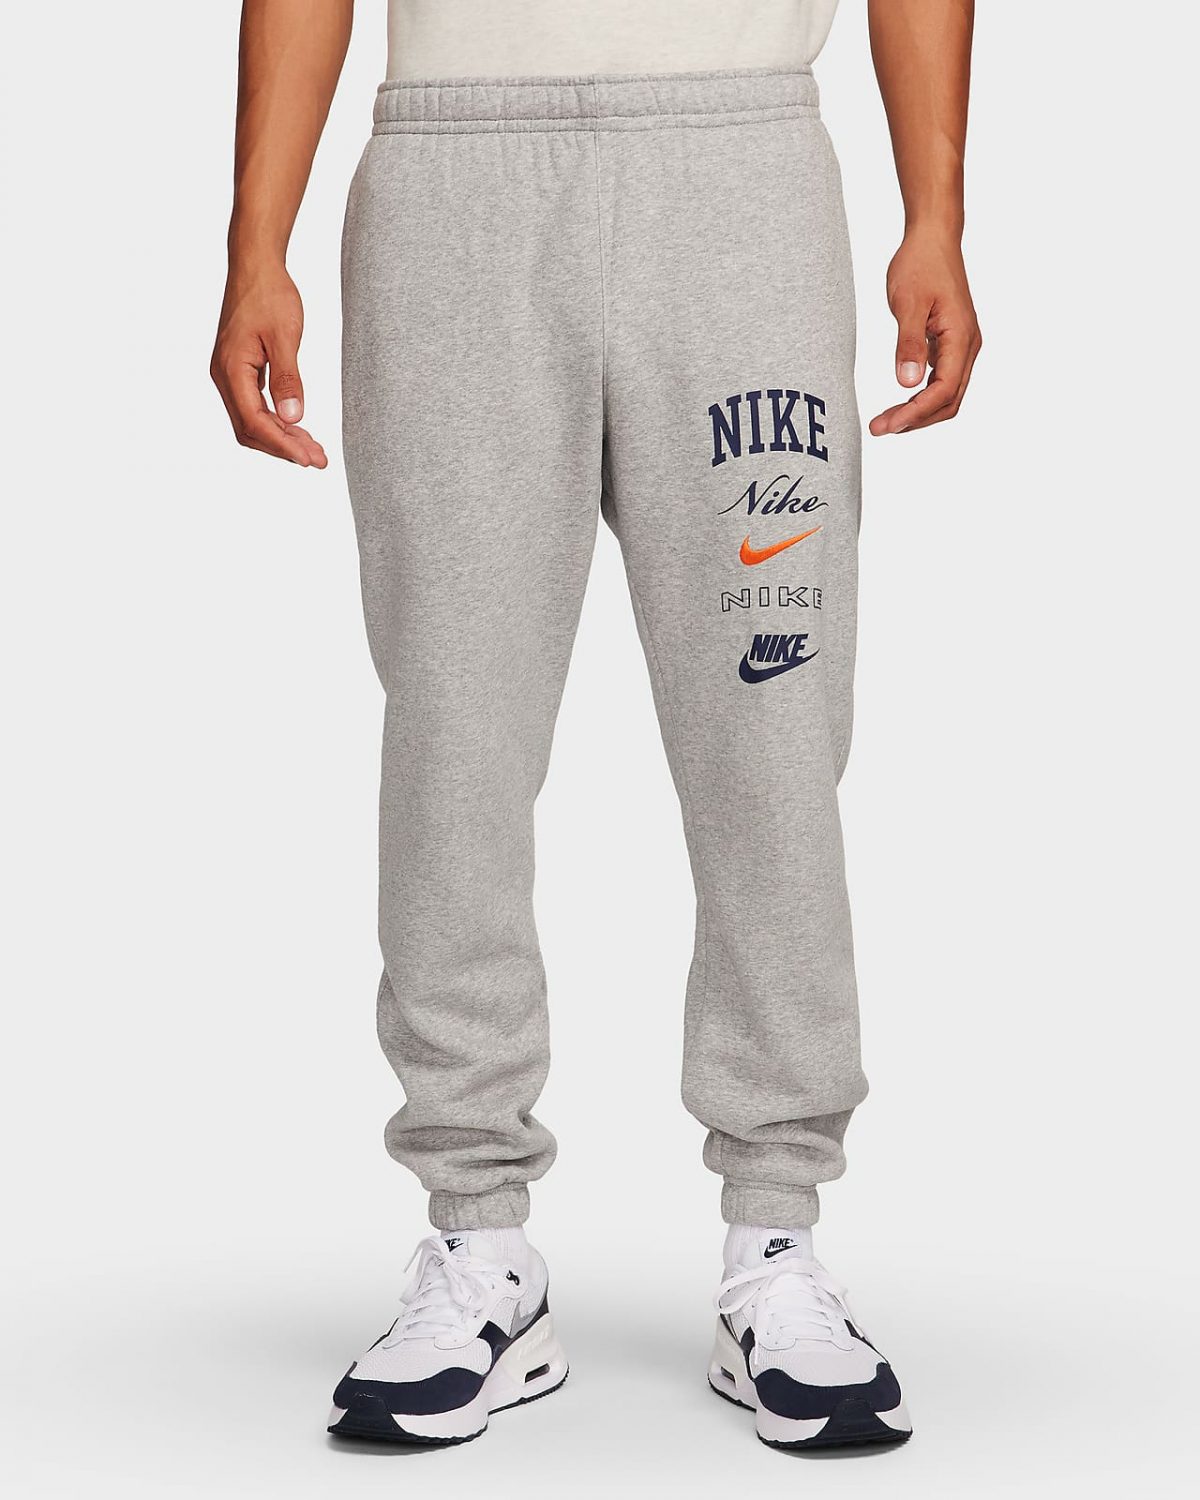 Мужские брюки Nike Club Fleece фото